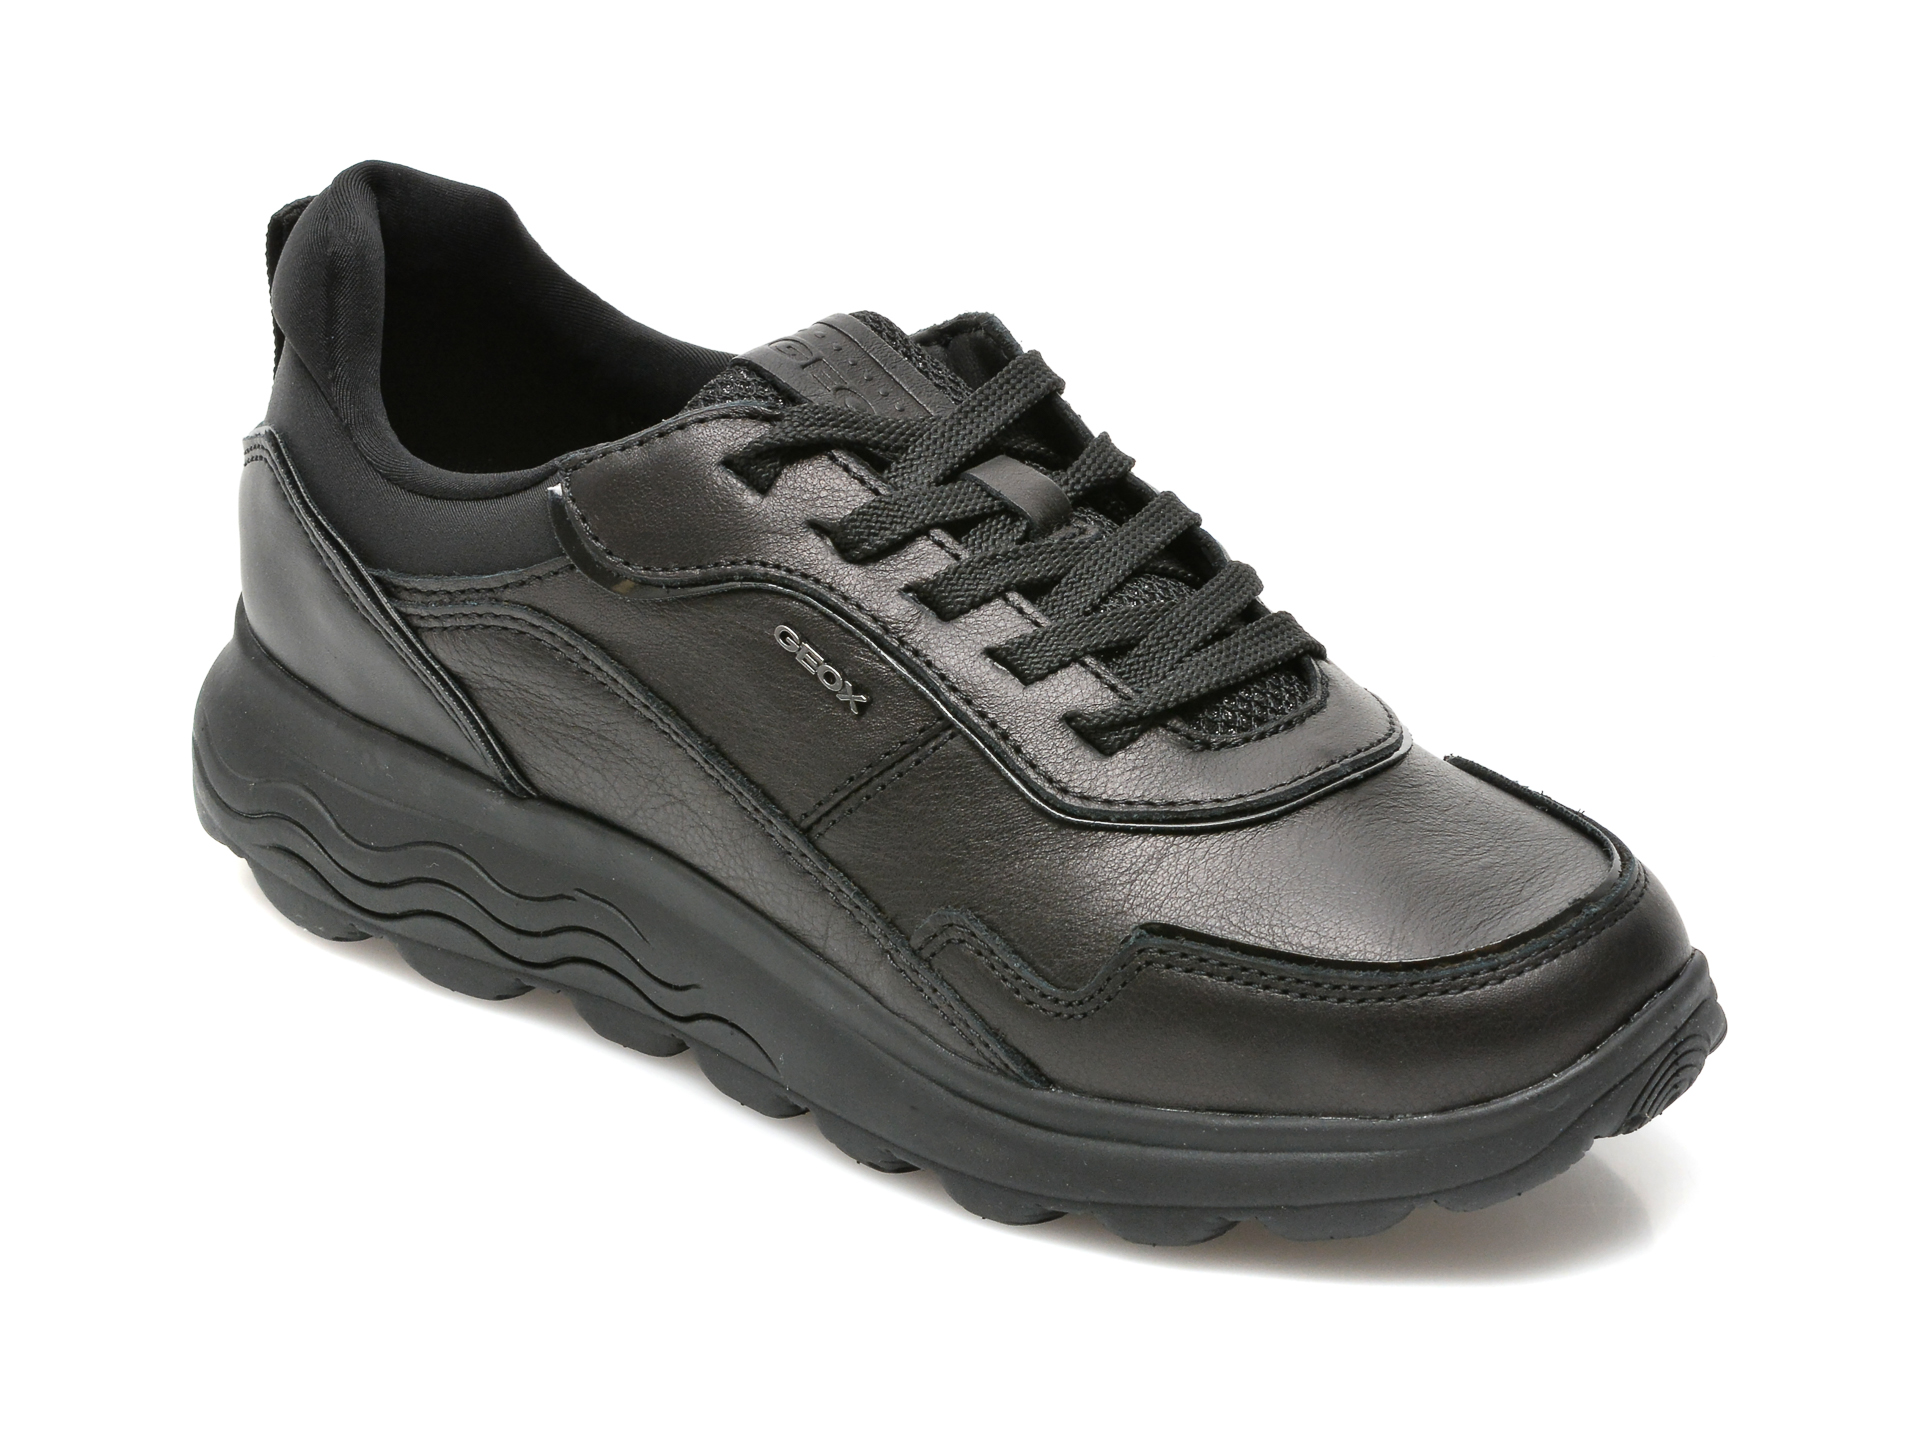 Pantofi sport GEOX negri, D16NUD, din material textil si piele naturala Geox